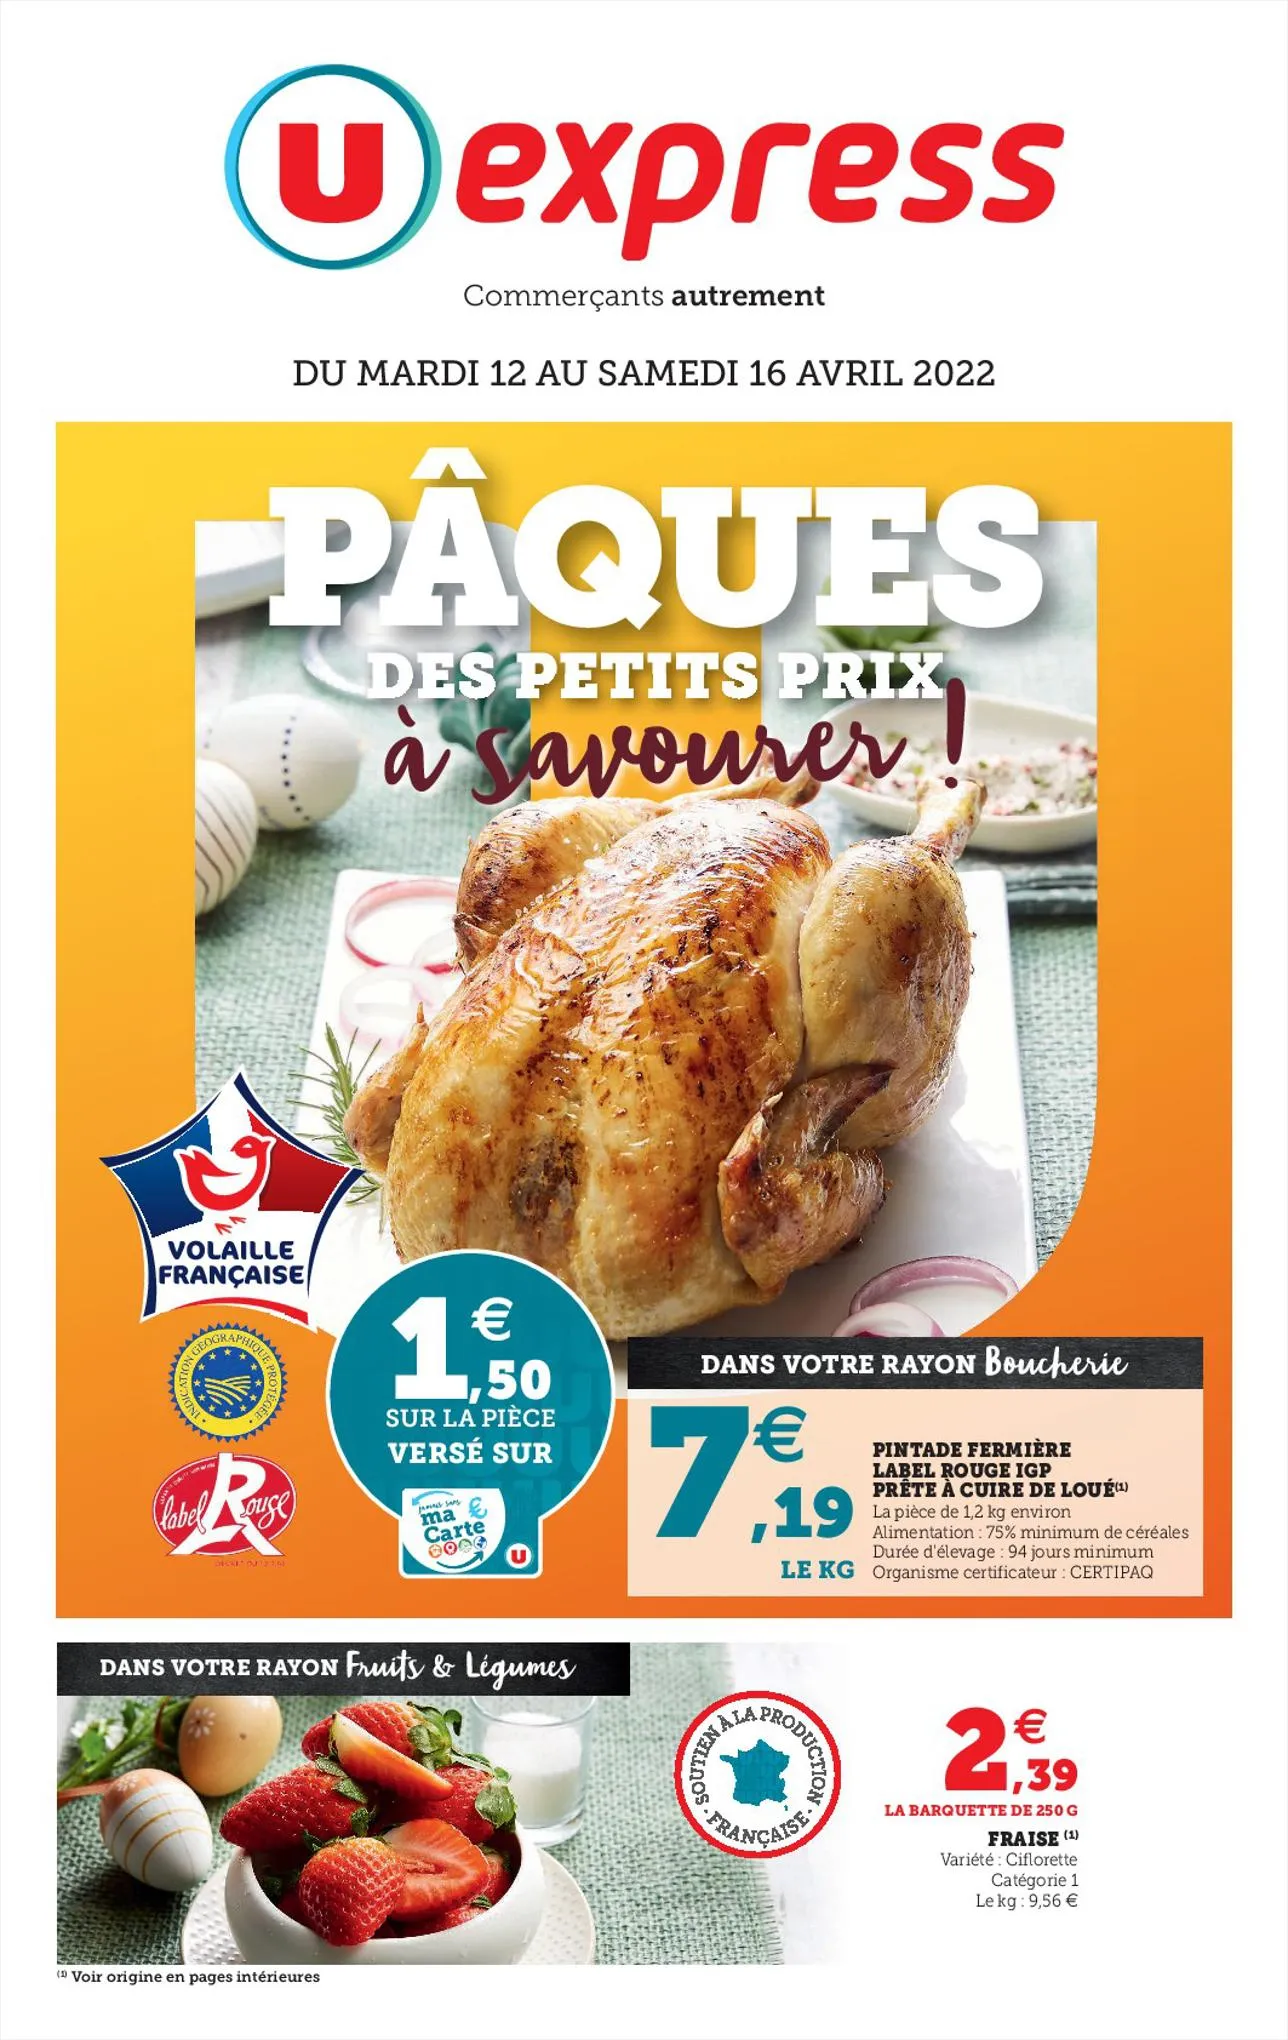 Catalogue PÂQUES DES PETITS PRIX À SAVOURER !, page 00001